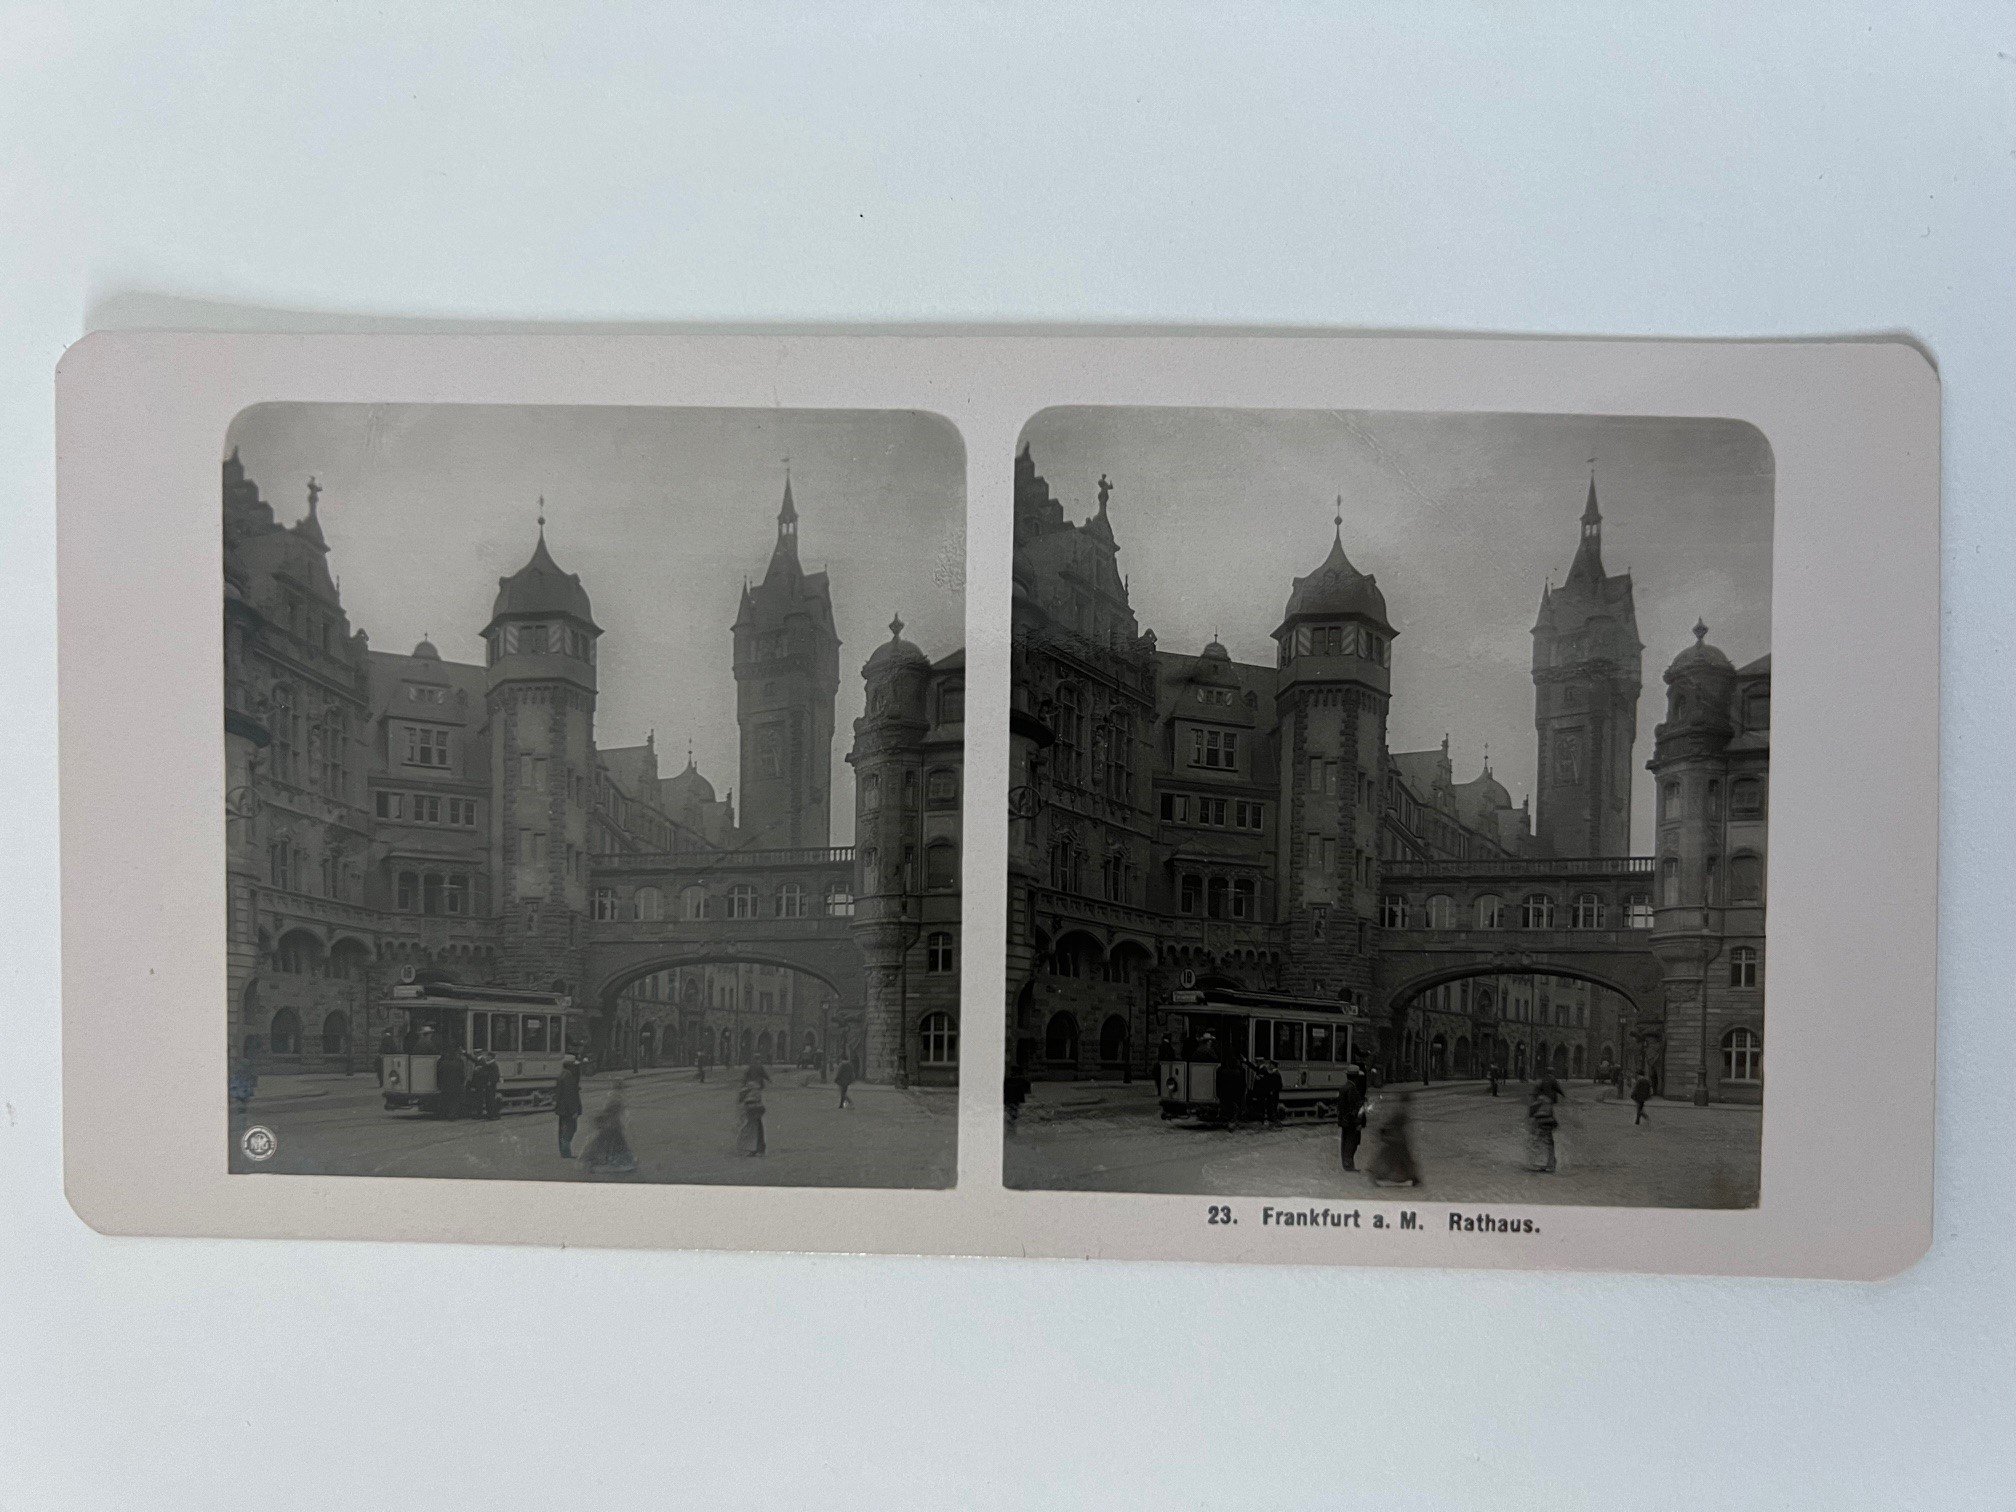 Stereobild, Unbekannter Fotograf, Frankfurt, Nr. 23, Rathaus, ca. 1906. (Taunus-Rhein-Main - Regionalgeschichtliche Sammlung Dr. Stefan Naas CC BY-NC-SA)